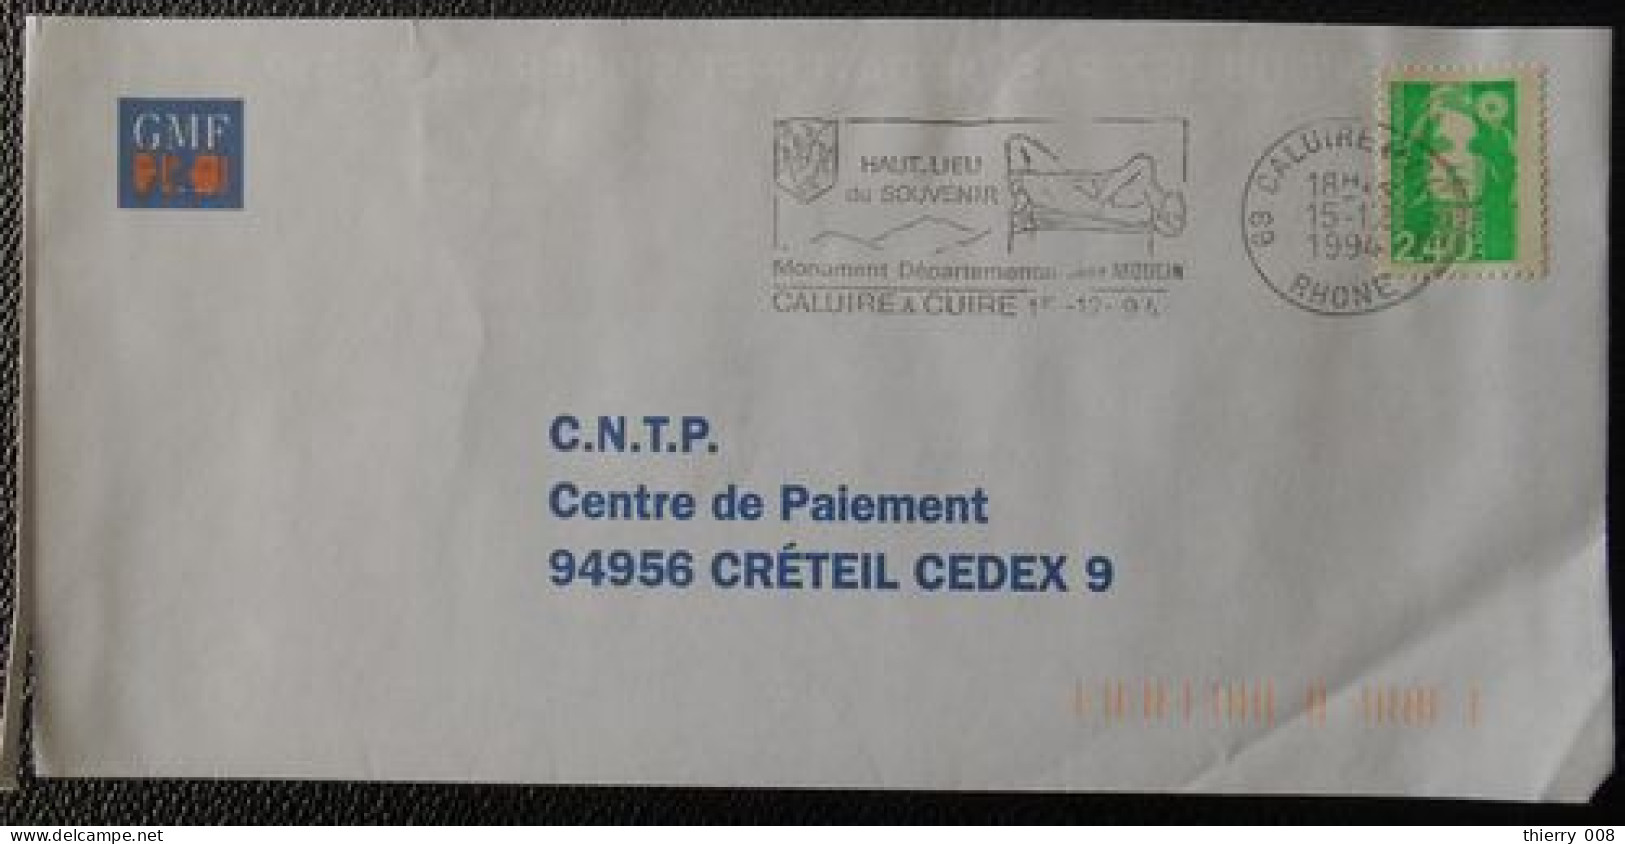 C046 Flamme Oblitération Caluire Et Cuire 69 Rhône Haut Lieu Du Souvenir Monument Départemental J. Moulin 15 12 94 - Mechanical Postmarks (Advertisement)